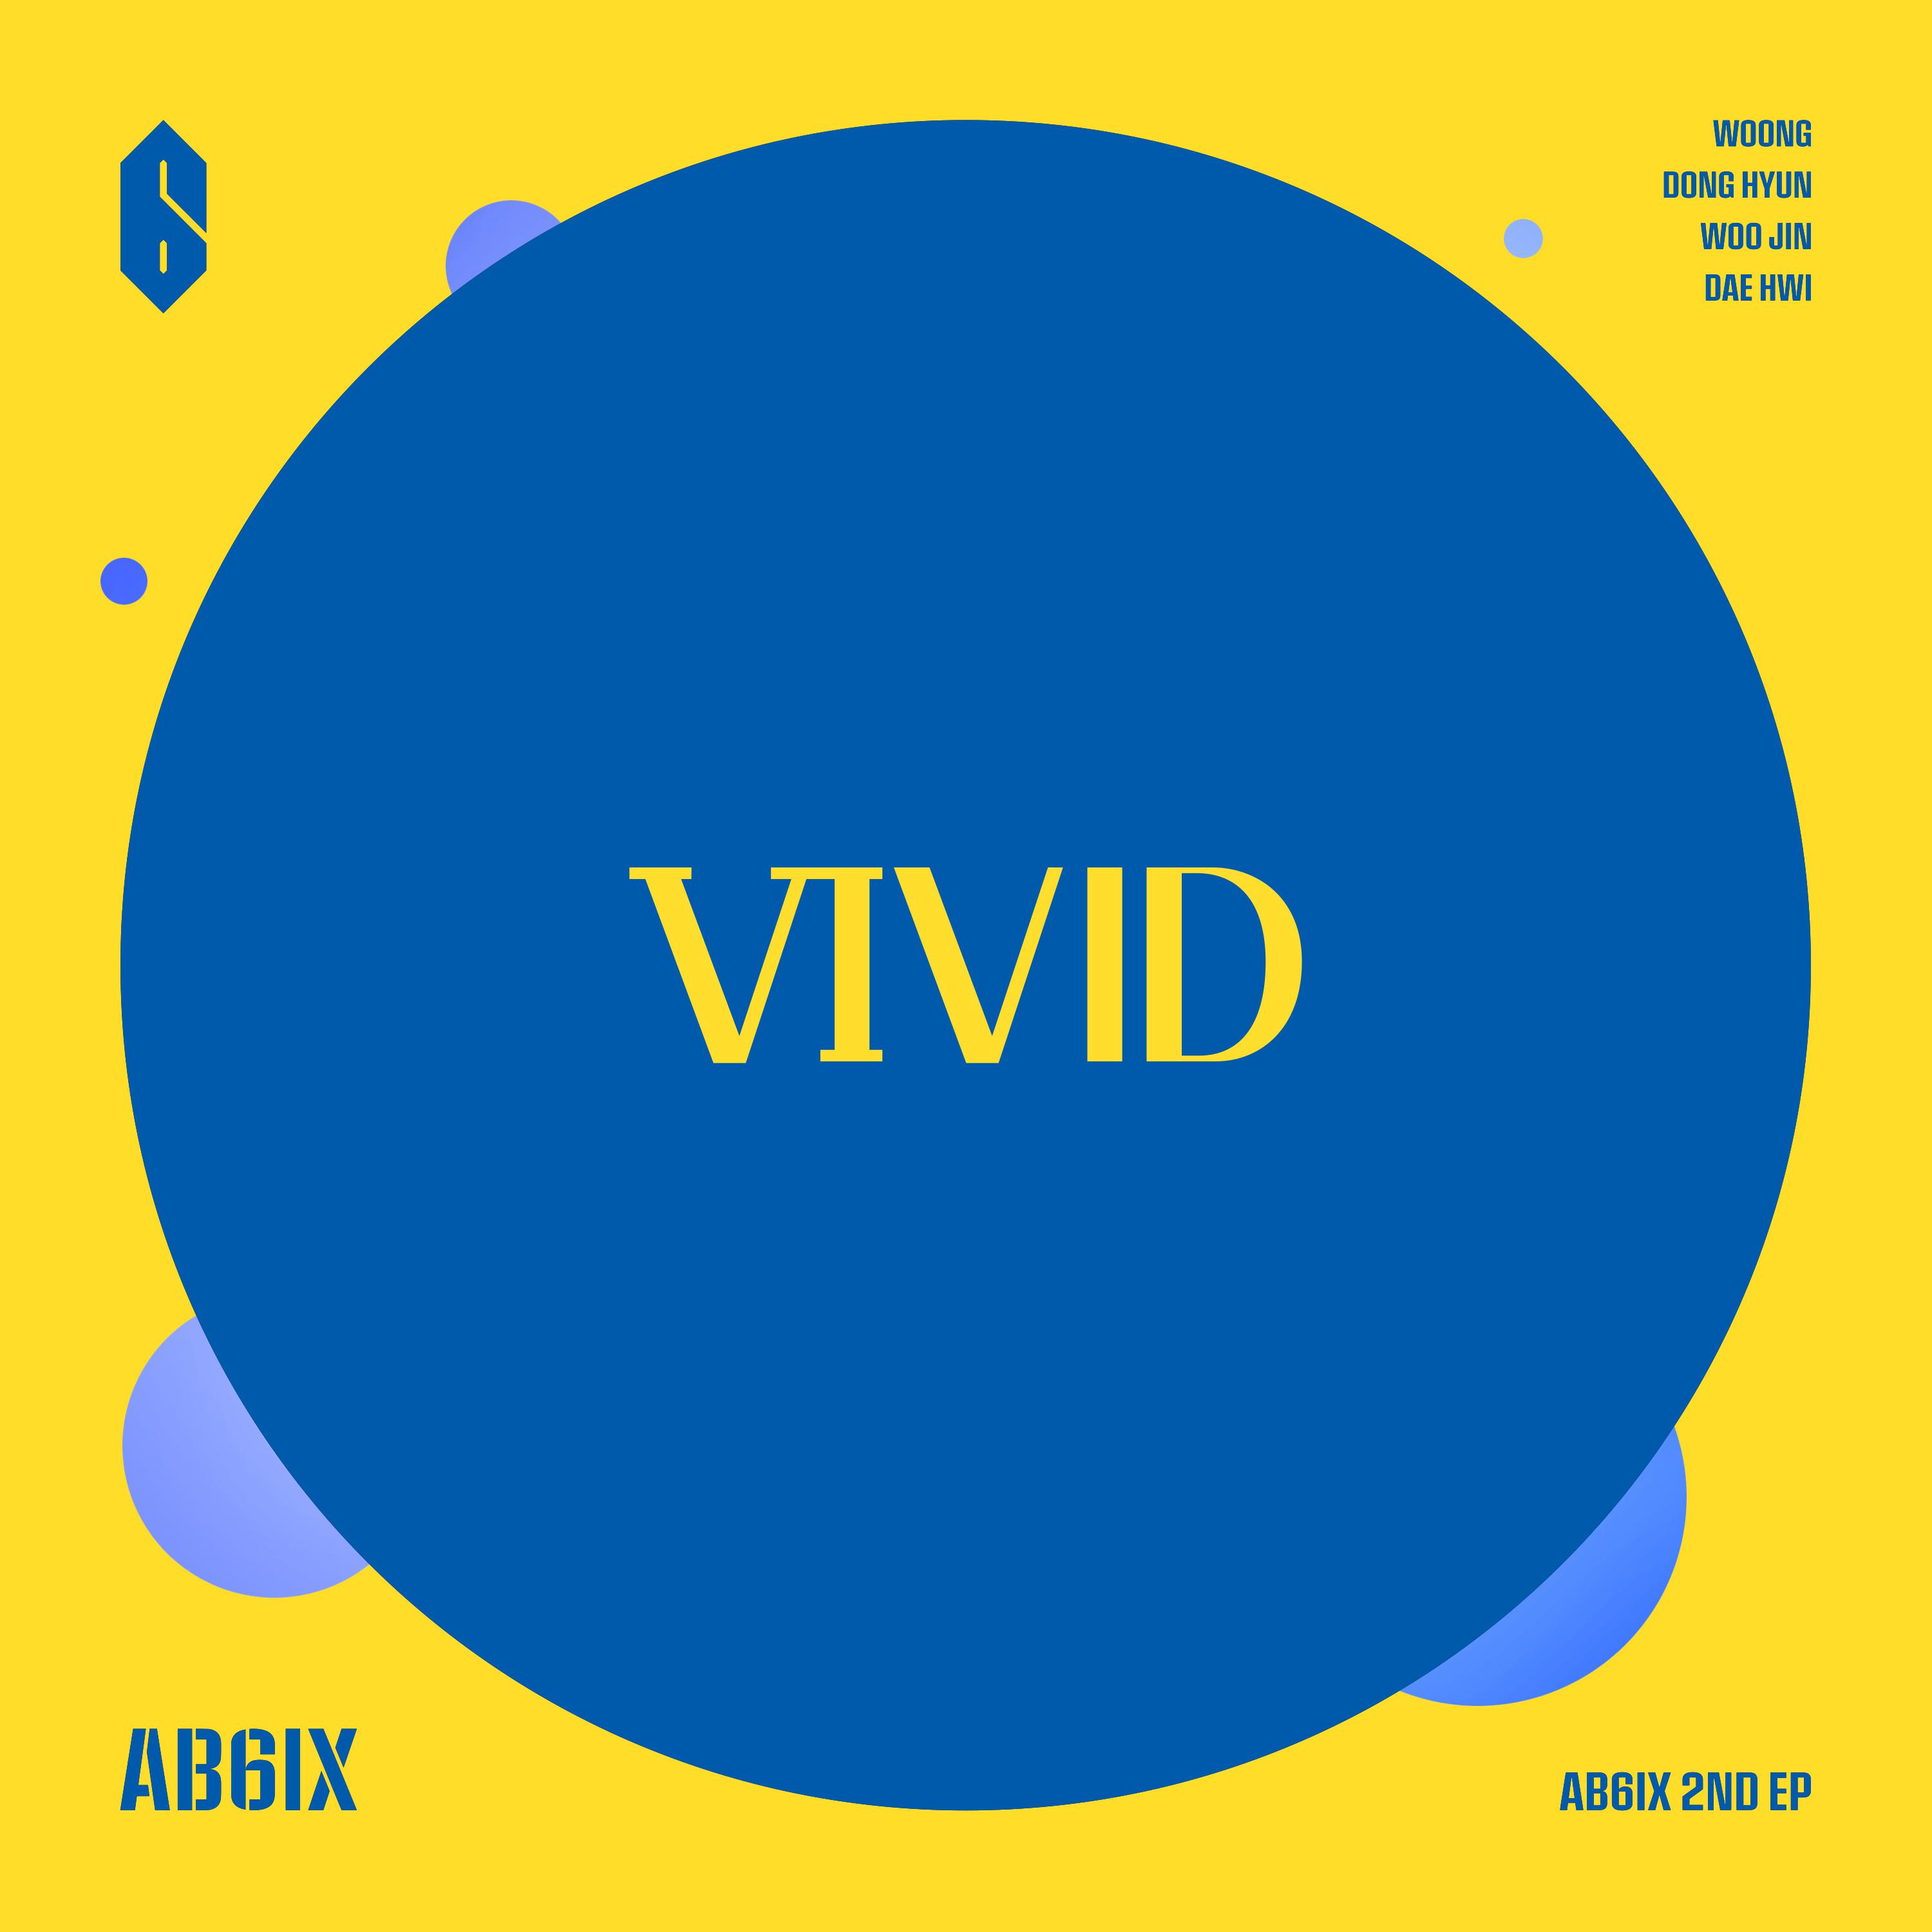 THE ANSWER歌词 歌手AB6IX-专辑VIVID-单曲《THE ANSWER》LRC歌词下载